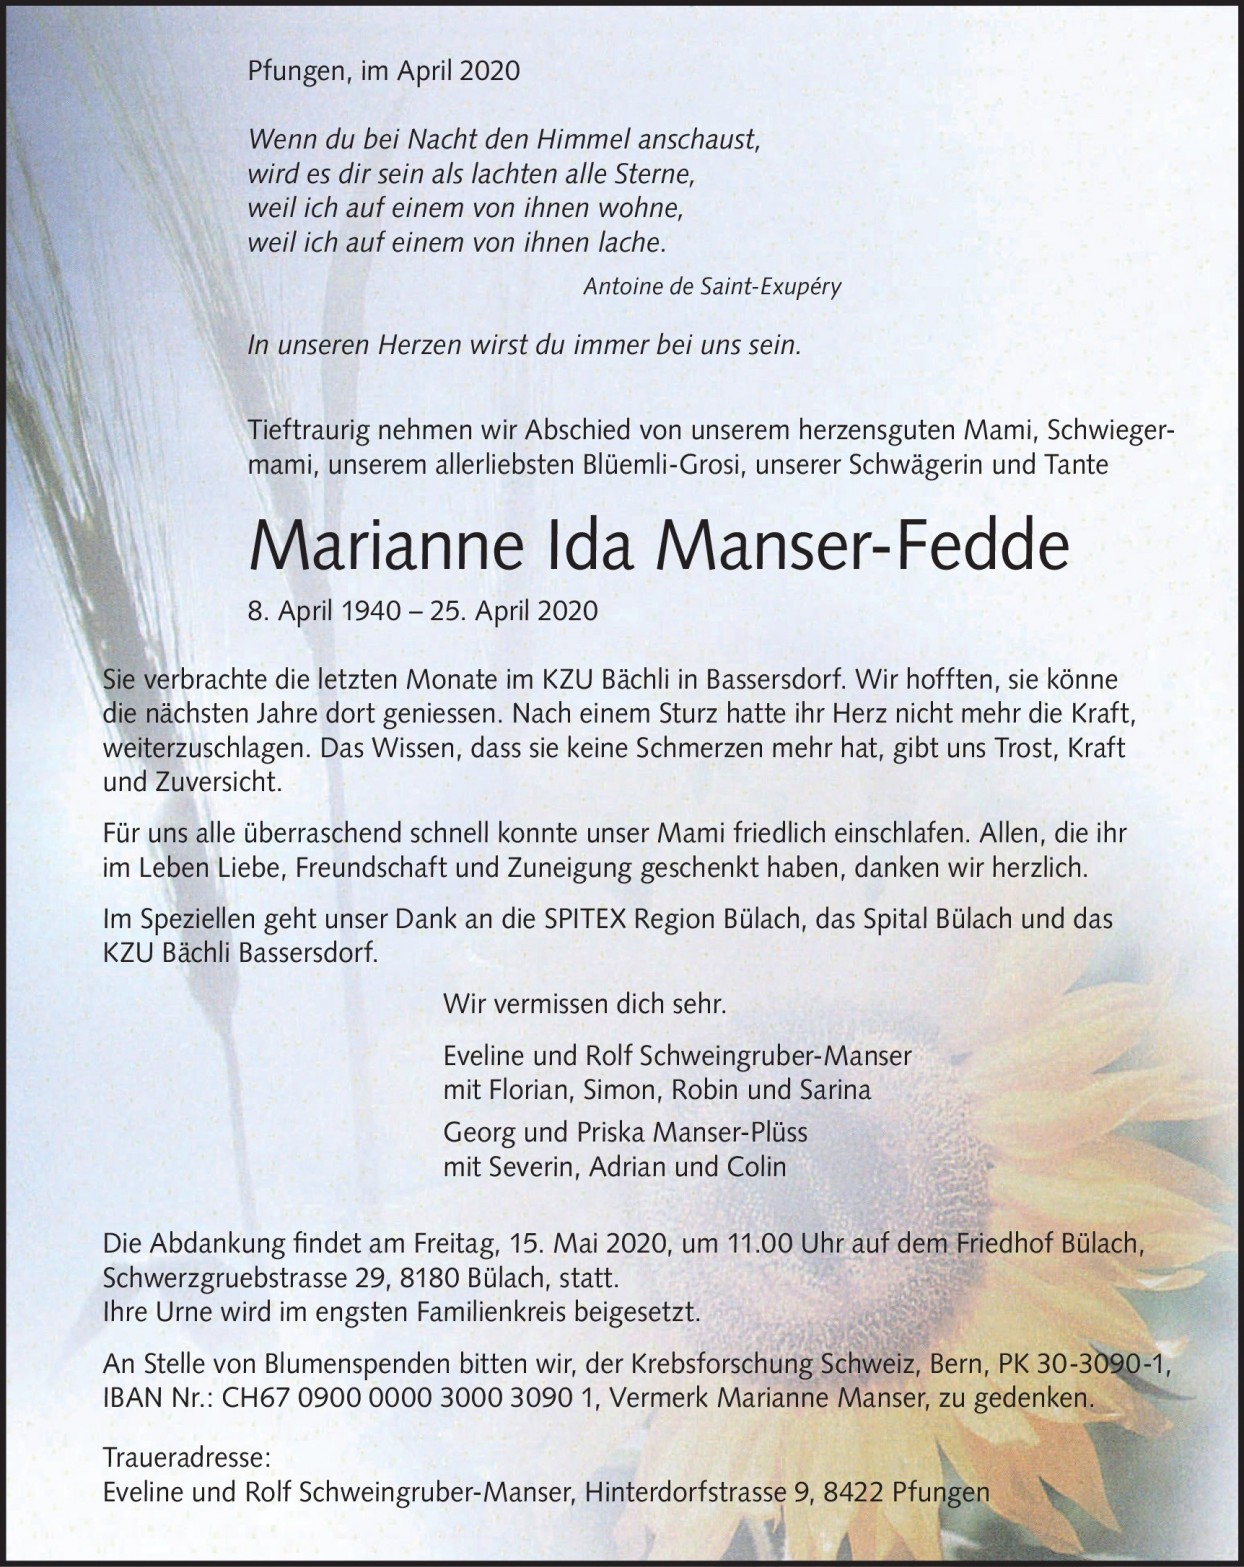 Marianne Ida Manser-Fedde